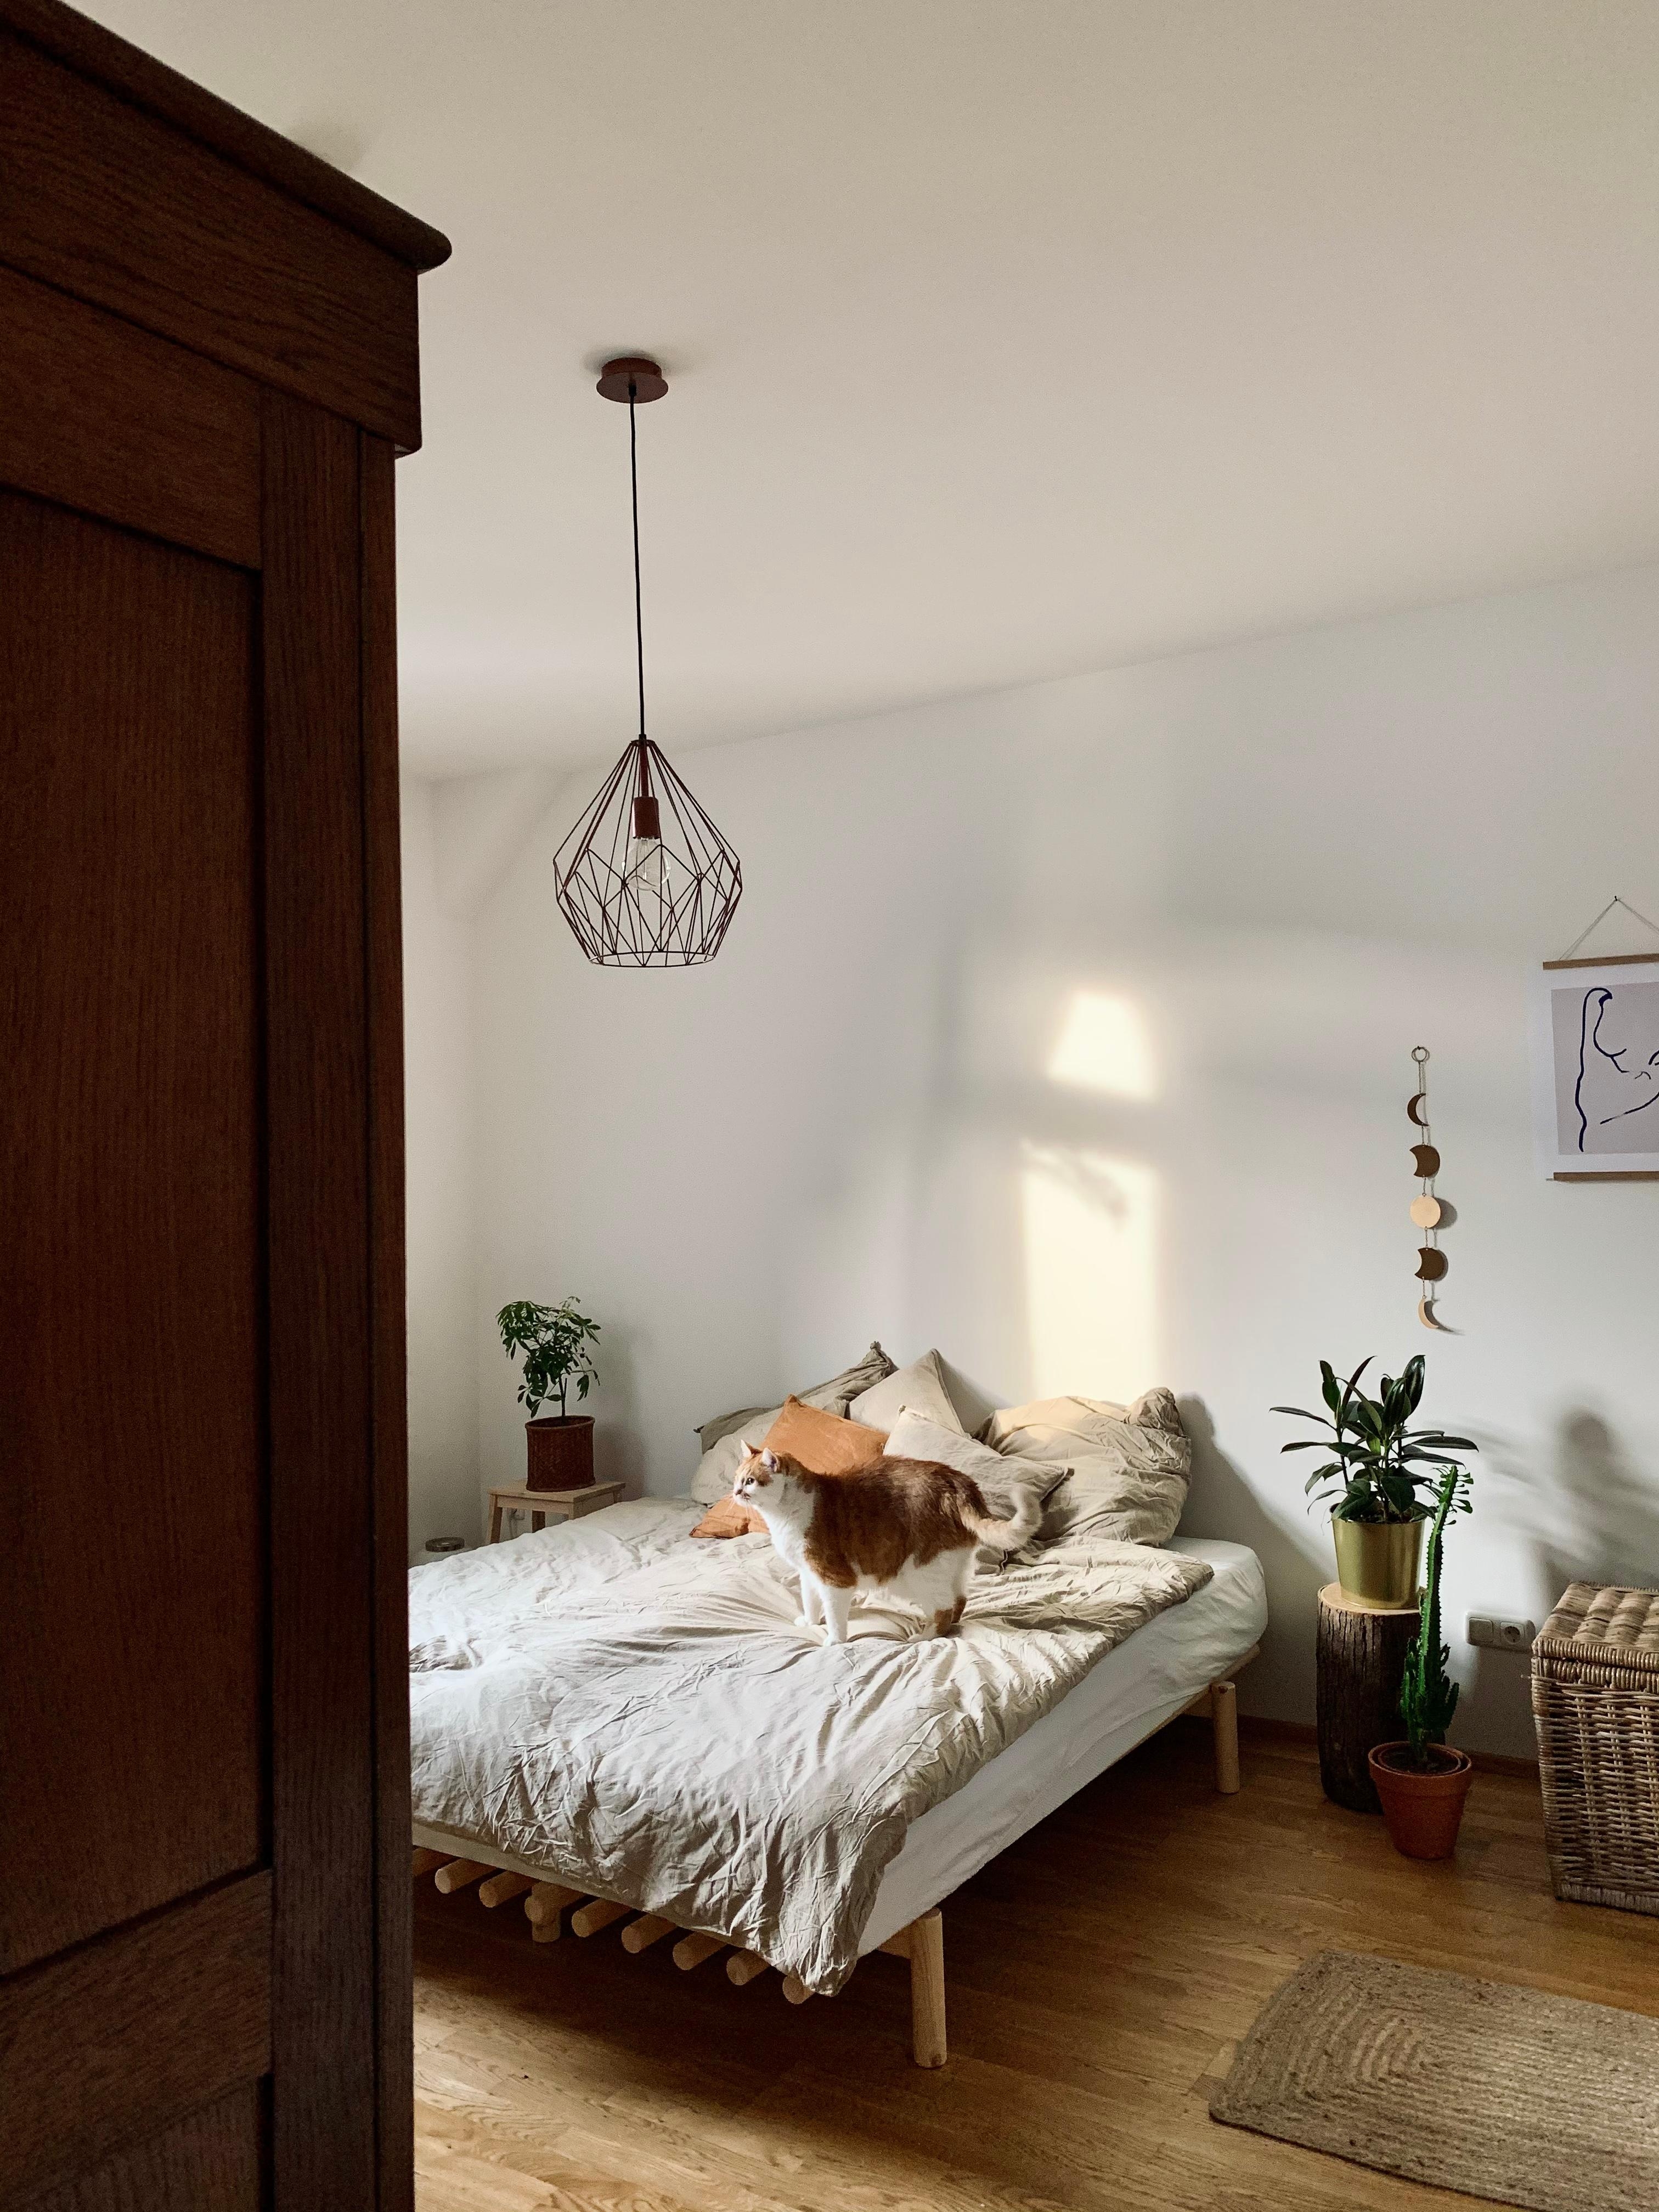 Bedroom vibes ✨

#bedroom#schlafzimmer#cozy#sonnenschein